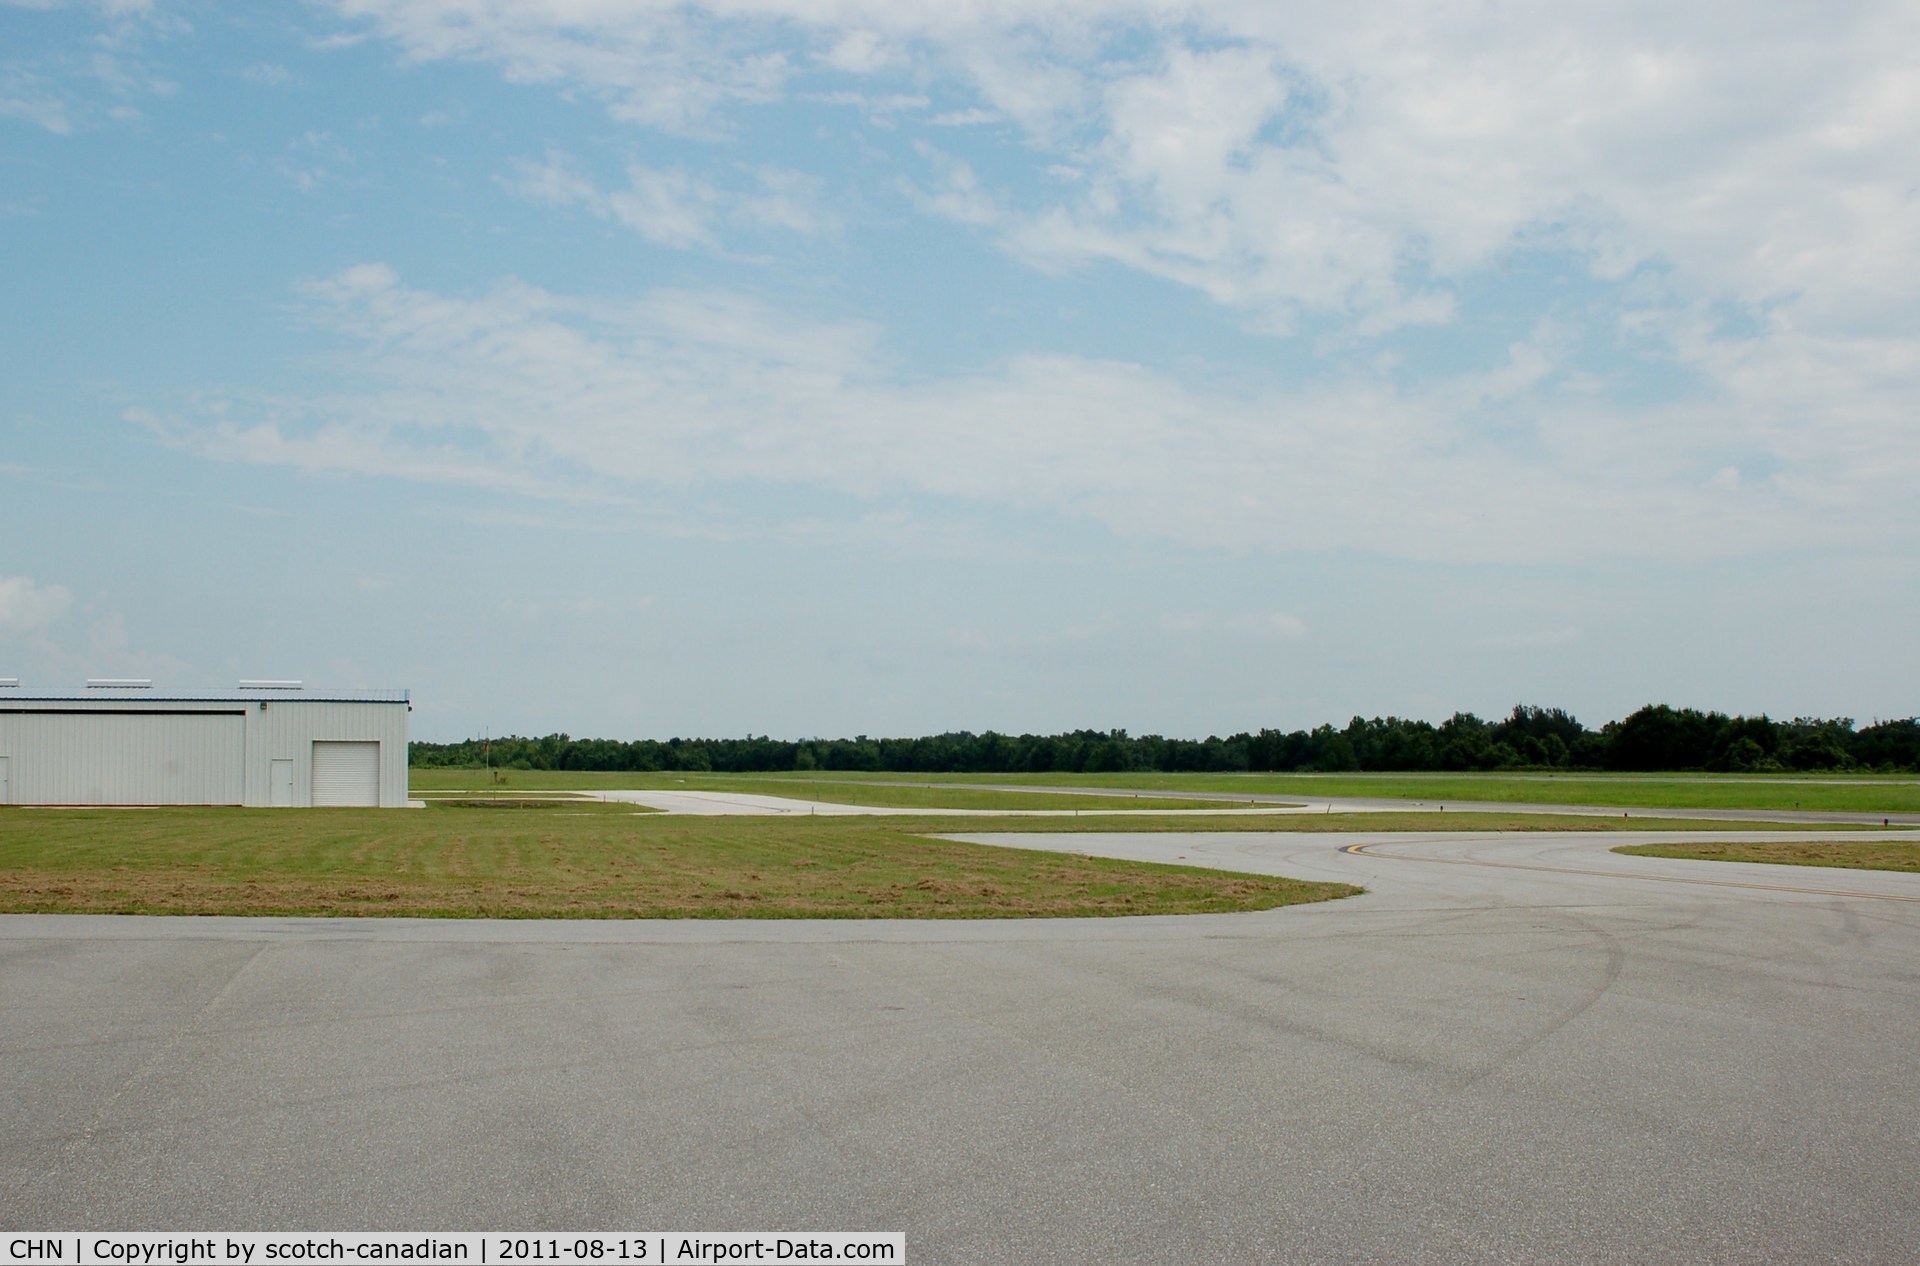 Wauchula Municipal Airport (CHN) - Approach End of Runway 18 at Wauchula Municipal Airport, Wauchula, FL